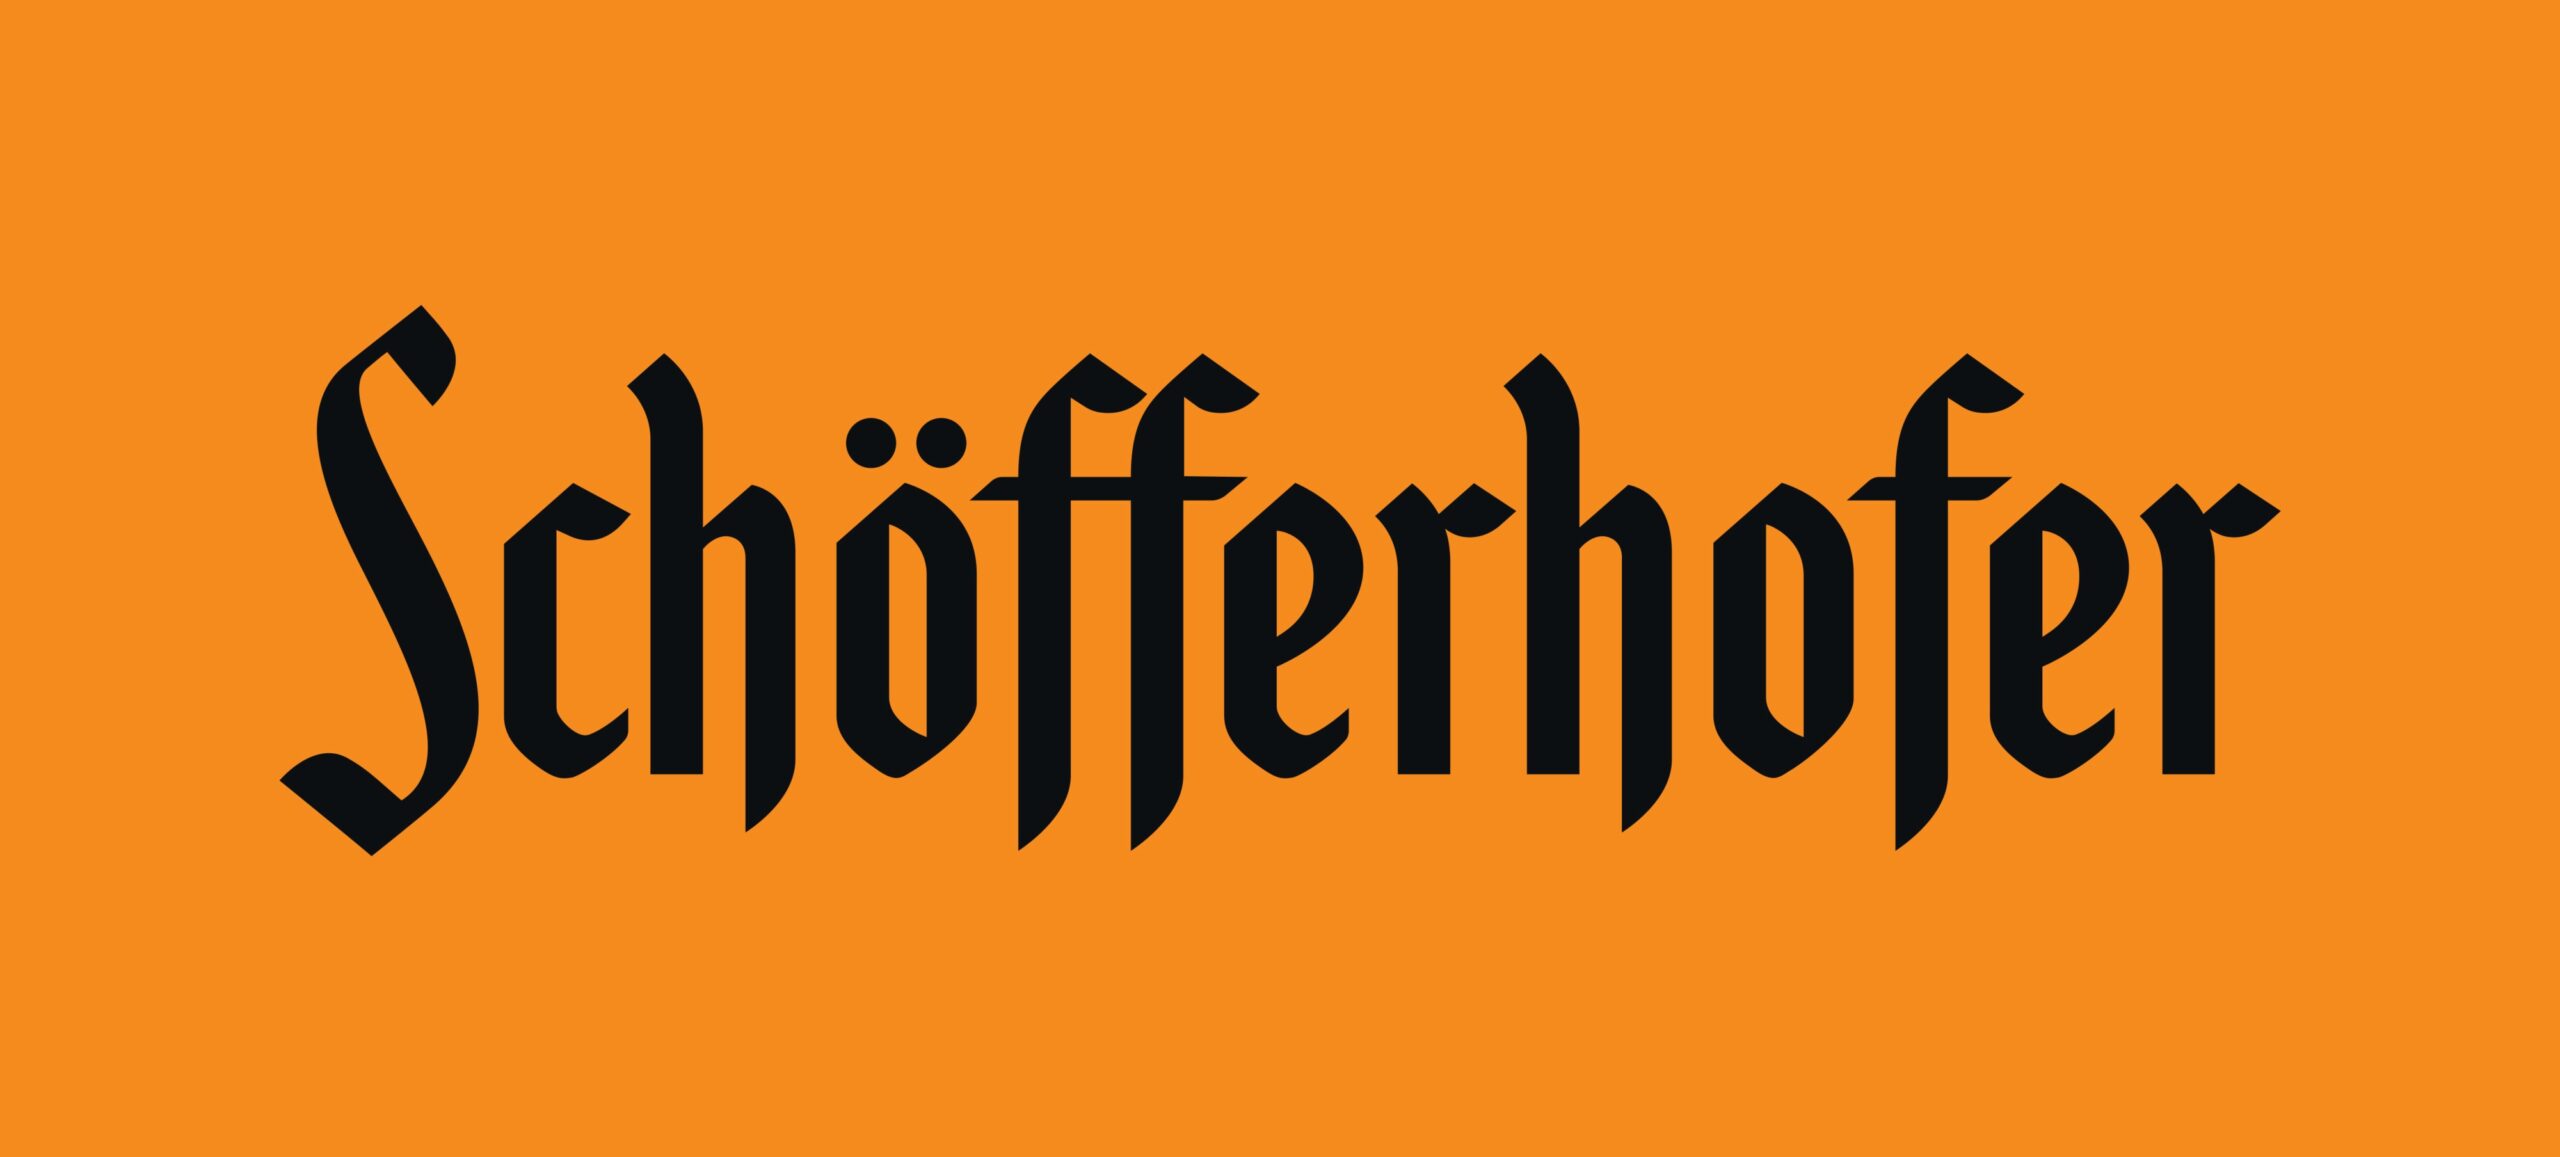 Schöfferhofer_Logo